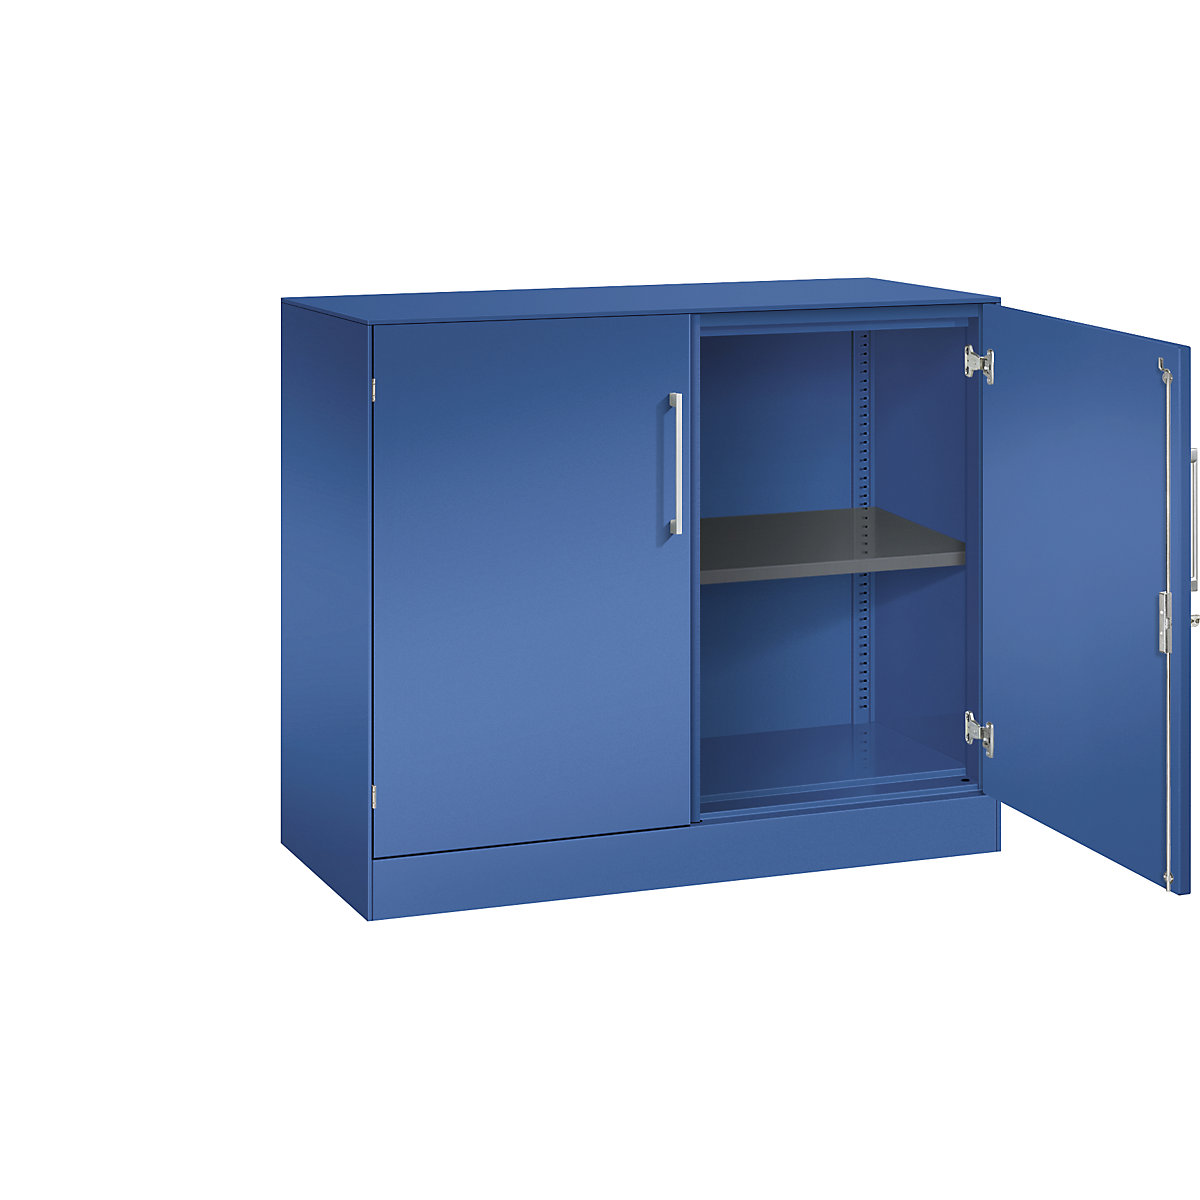 ASISTO double door cupboard, height 897 mm – C+P